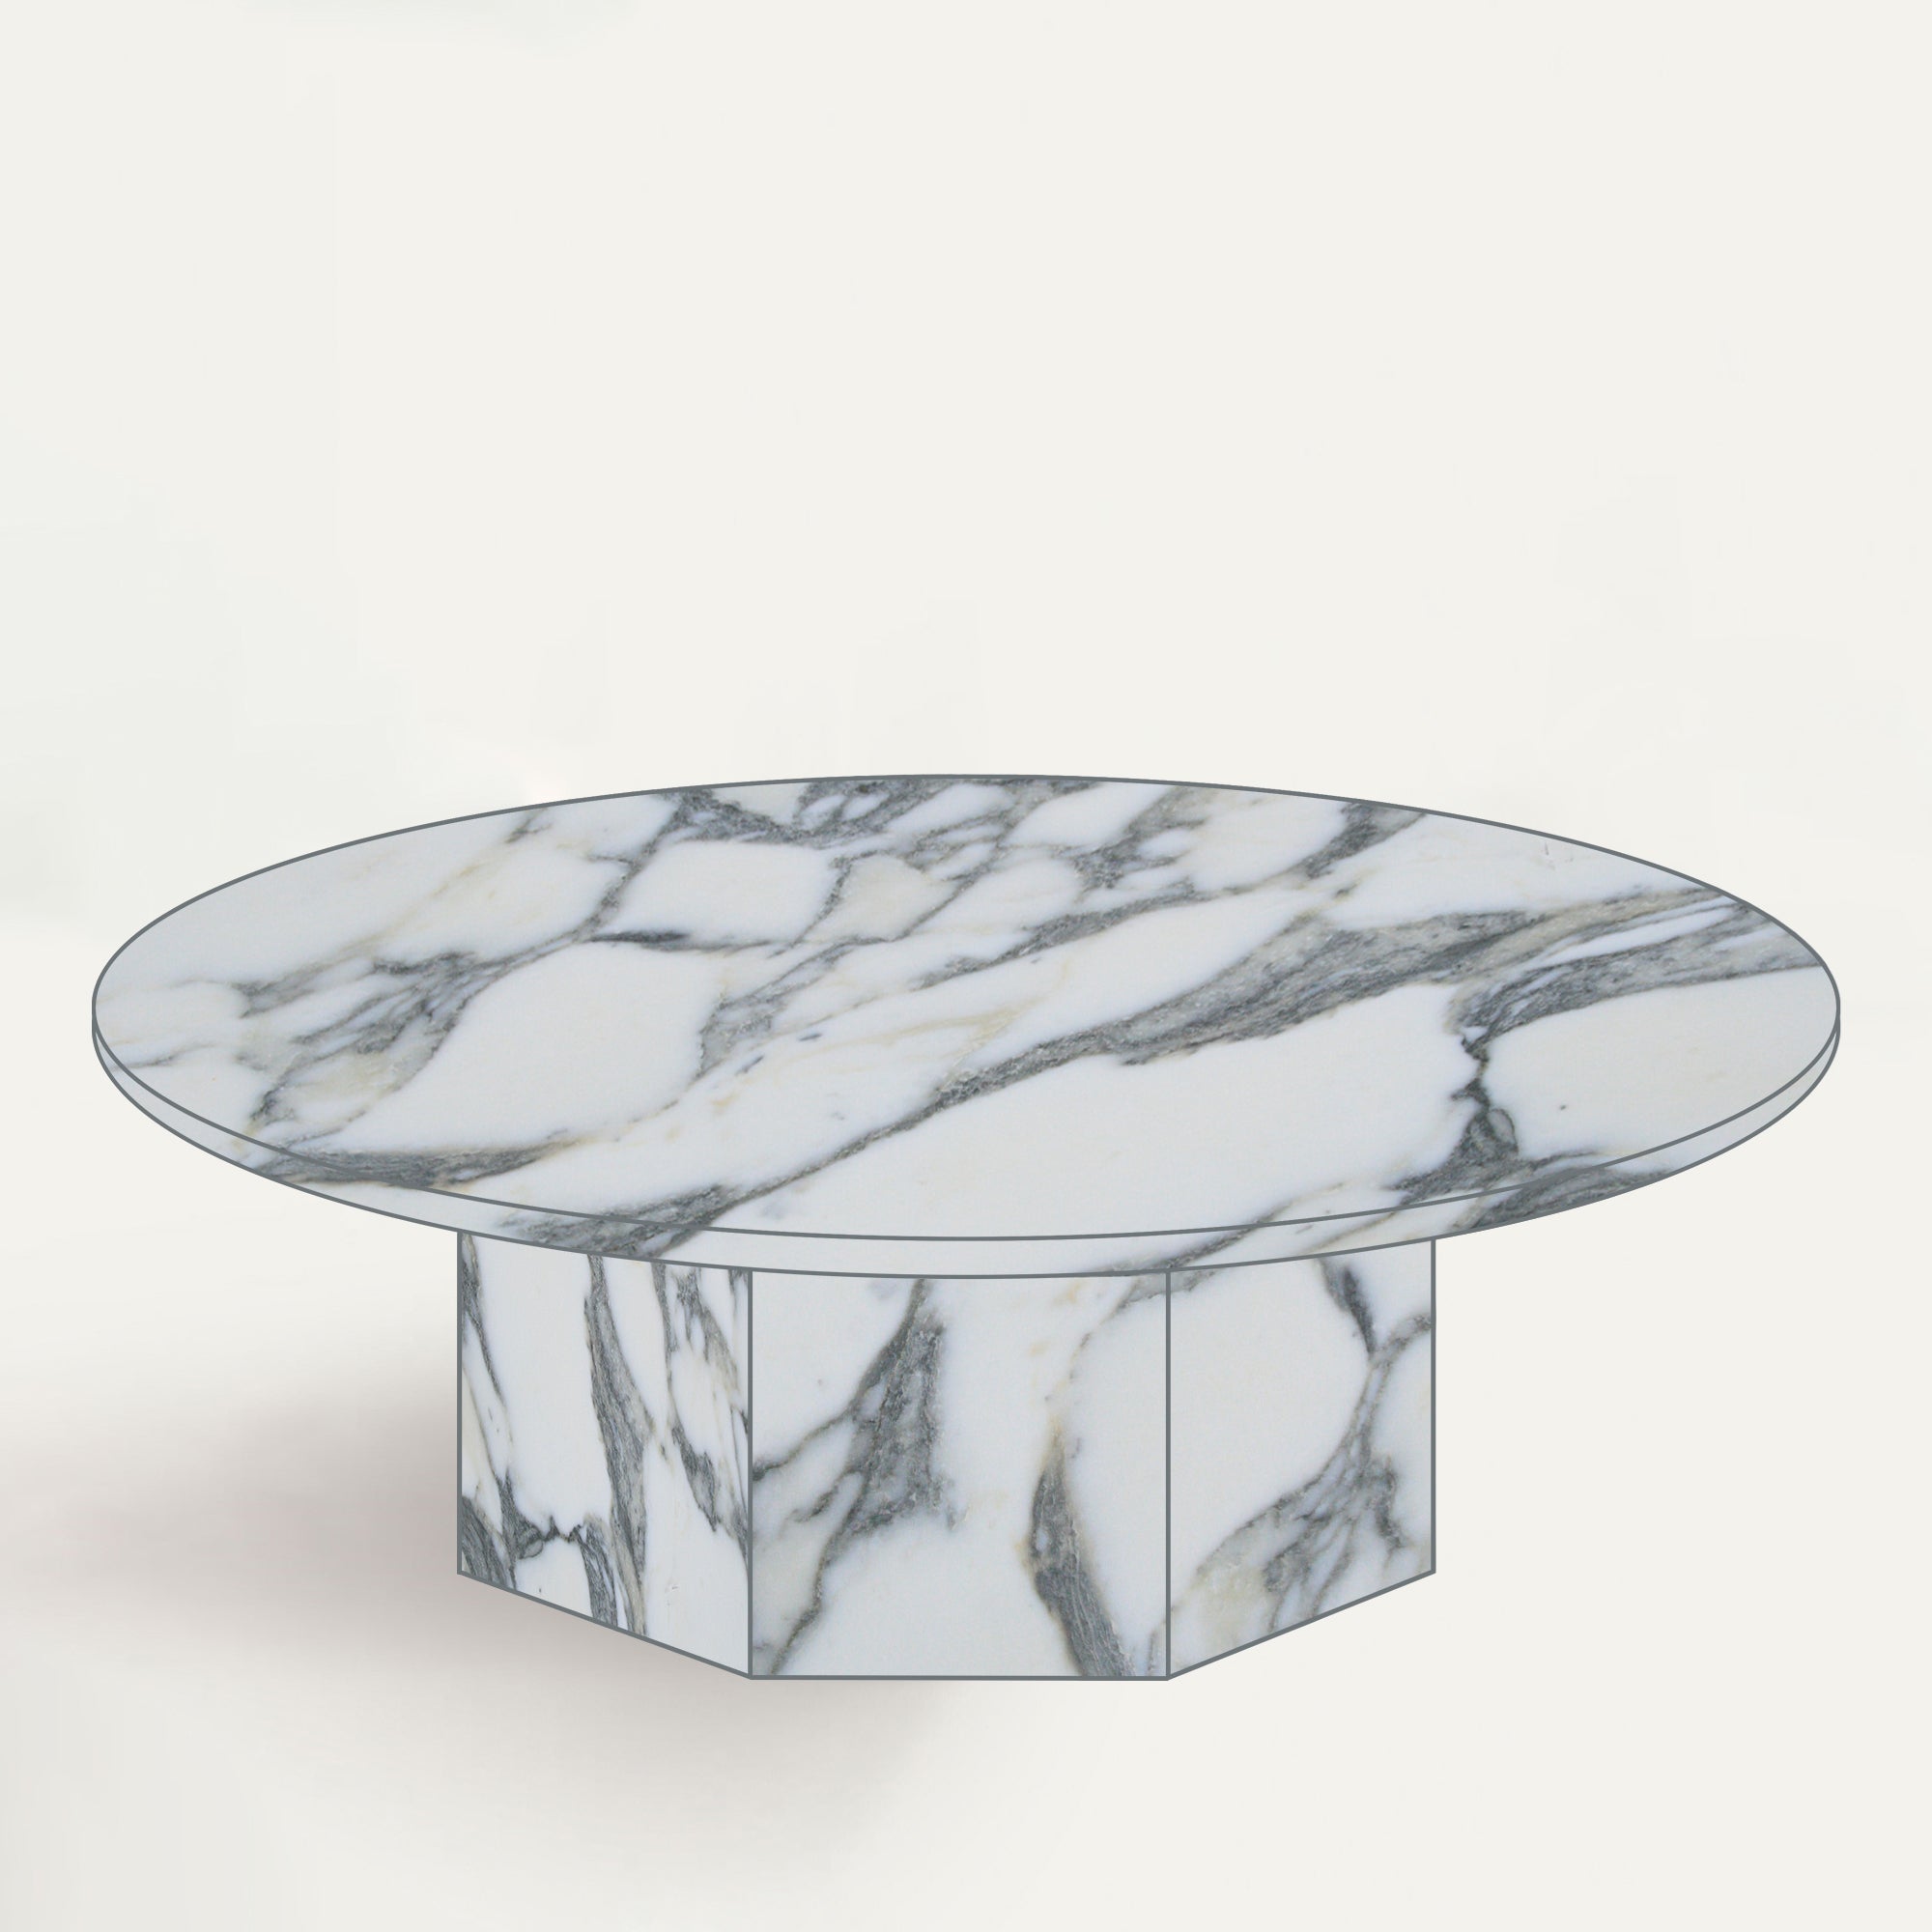 Arabescato Corchia marble